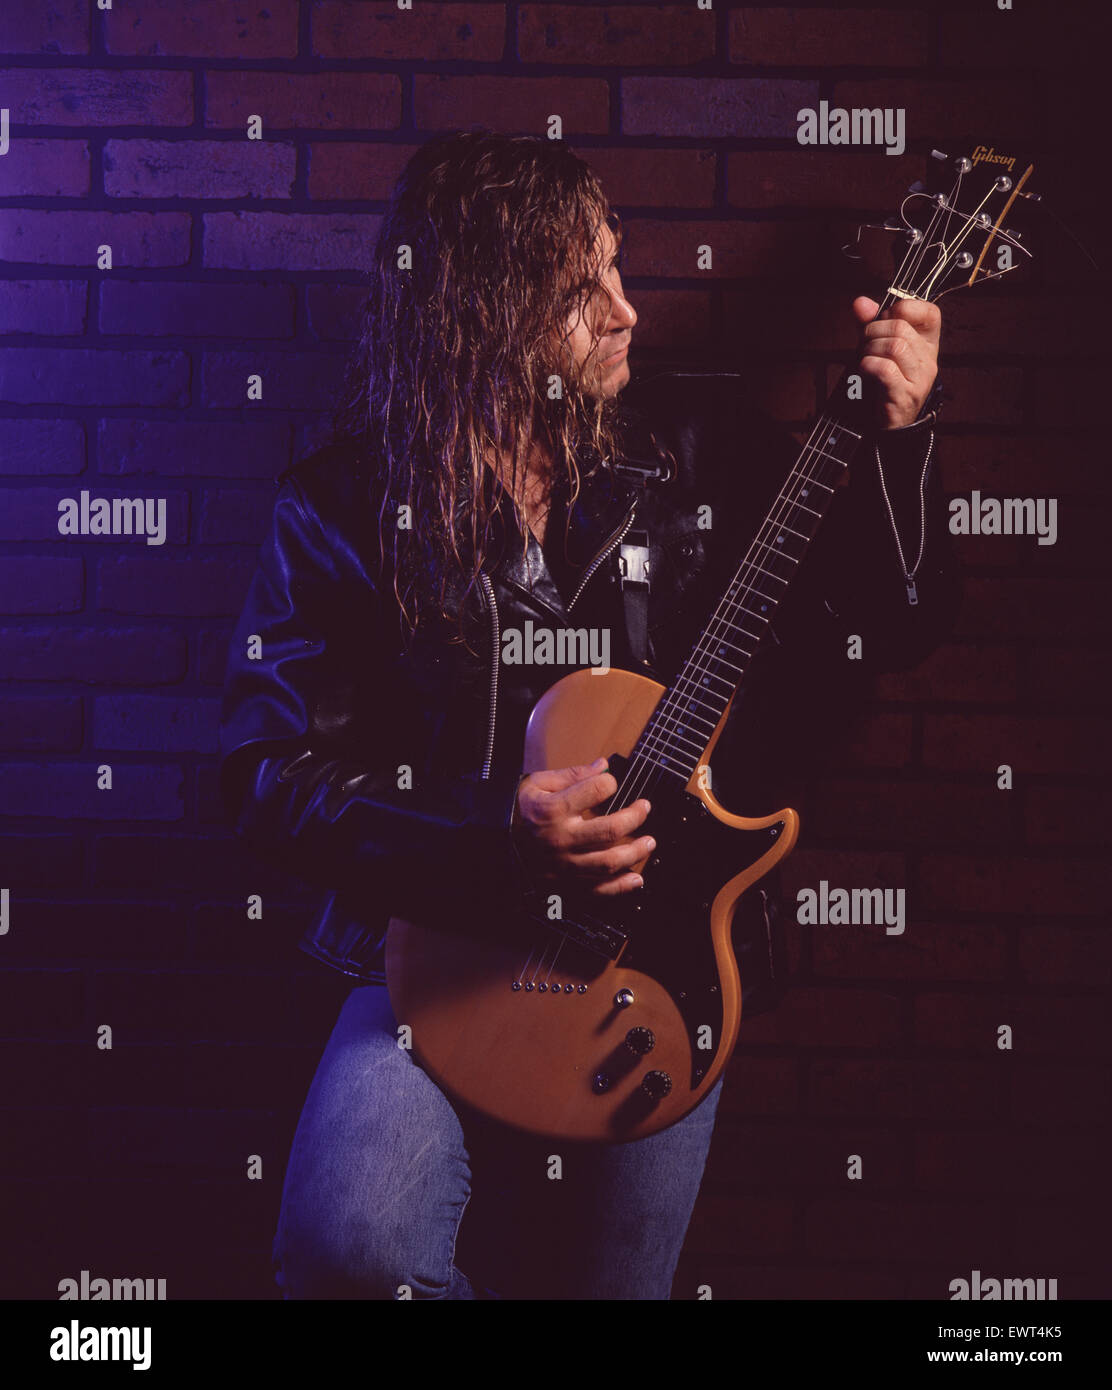 Guitariste rock avec de longs cheveux blonds, portant une veste en cuir, jouant de la guitare électrique contre un mur de briques. Banque D'Images